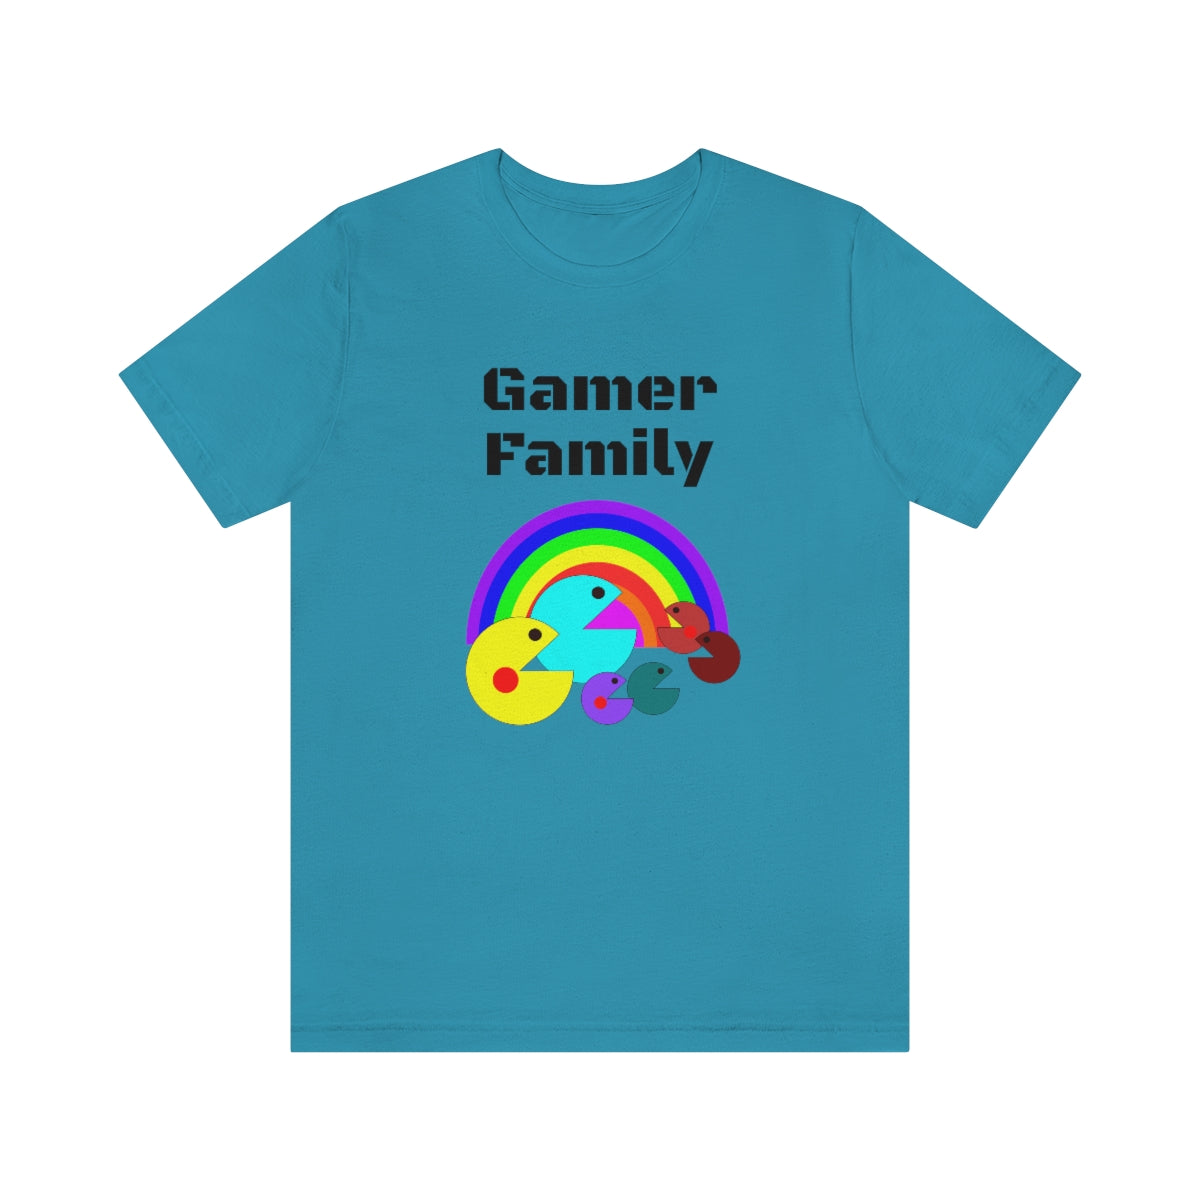 Gamer family - Funny Unisex Short Sleeve Tee.